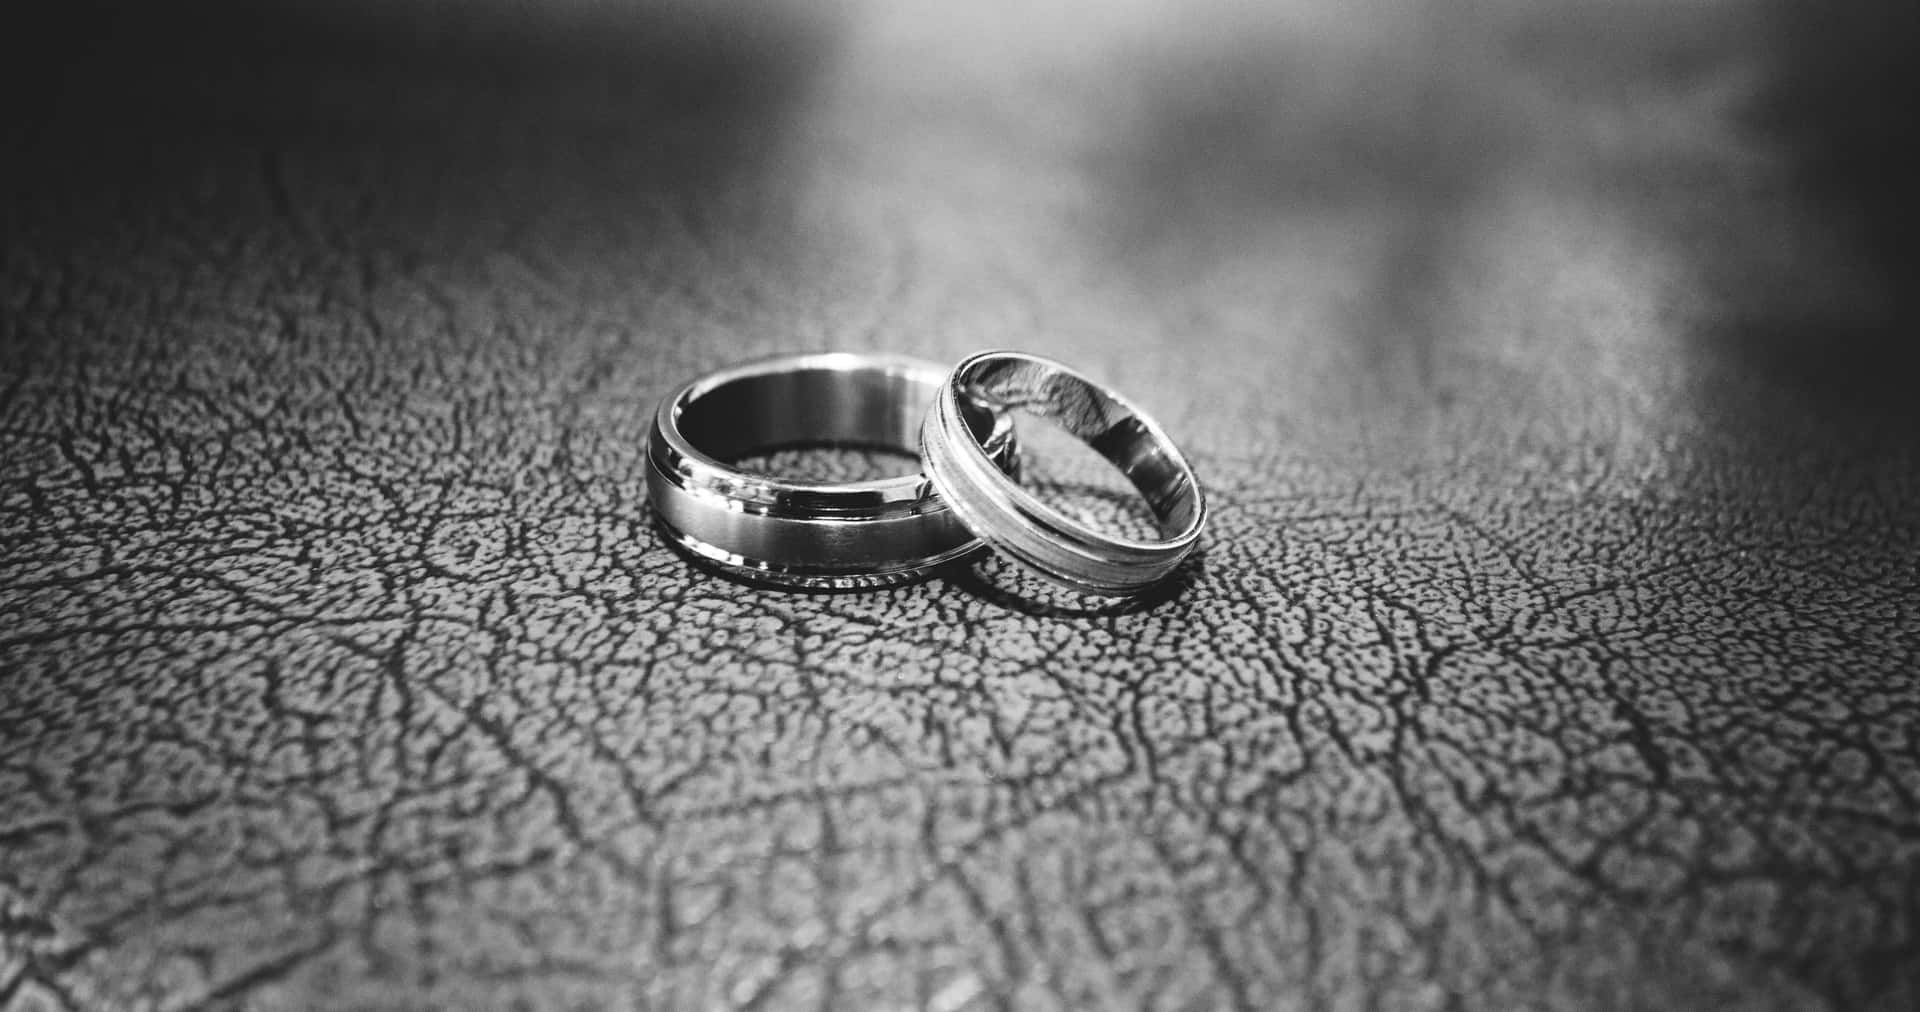 Bạn sắp tổ chức đám cưới và đang muốn tìm kiếm một chiếc nhẫn cưới đẹp để khởi đầu chuyện tình yêu của mình? Hãy xem hình ảnh nhẫn cưới để tìm kiếm chiếc nhẫn ưng ý nhất cho người đặc biệt của bạn.